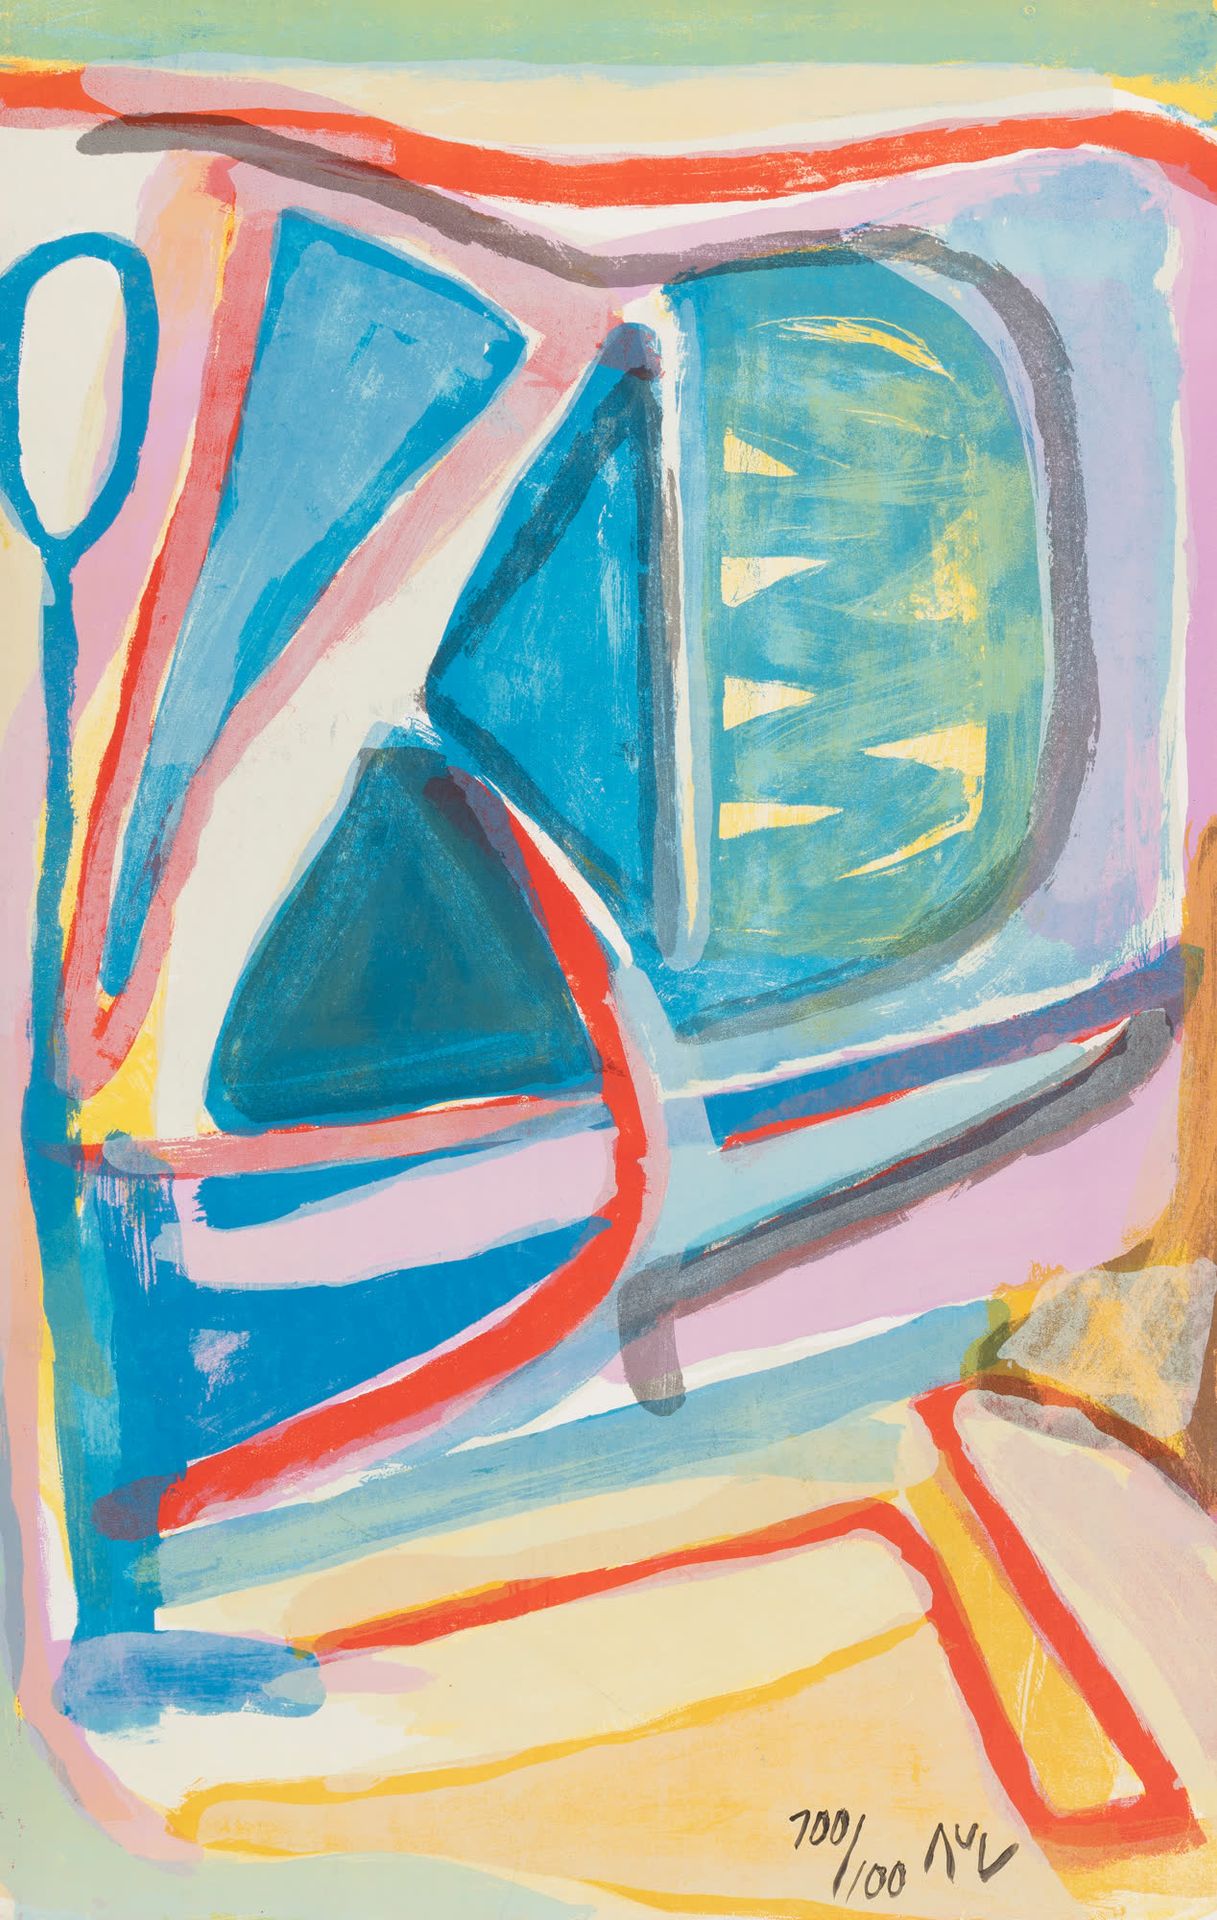 Bram VAN VELDE (1895-1981) 冲动。
彩色石板画。
签名和编号100/100。
彩色石板画。
Gesigneerd en genumme&hellip;